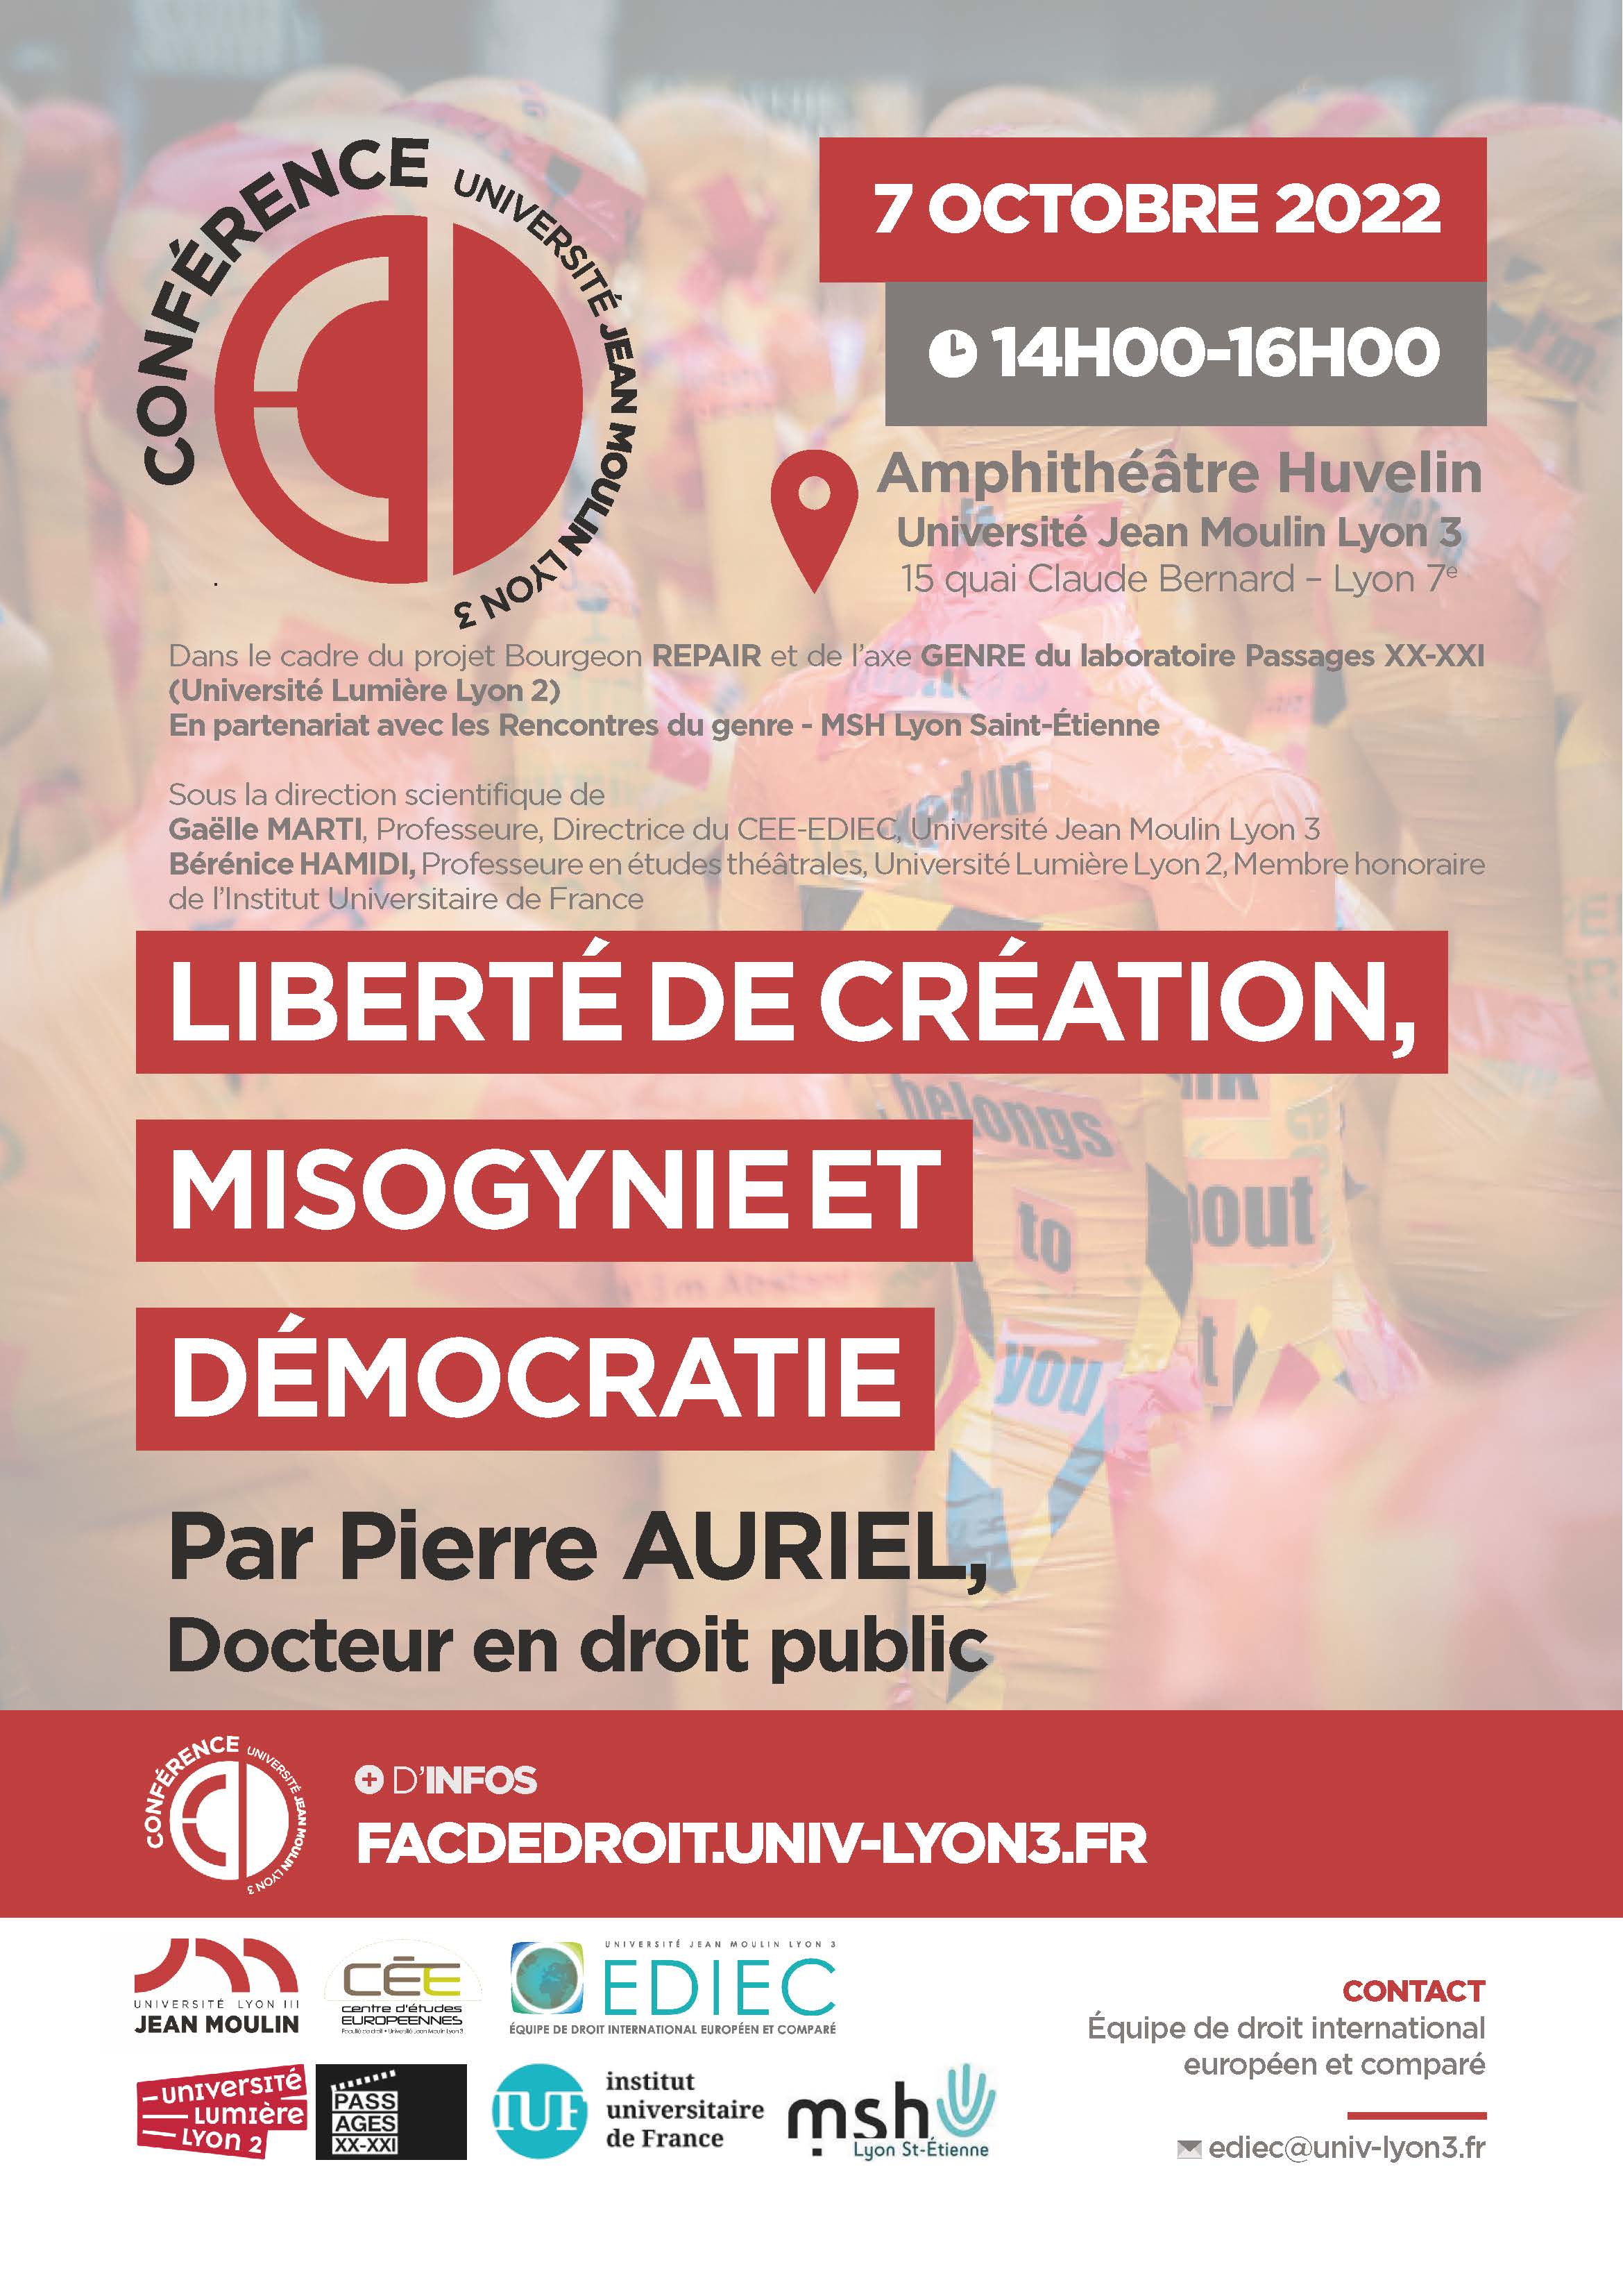 https://facdedroit.univ-lyon3.fr/conference-liberte-de-creation-misogynie-et-democratie